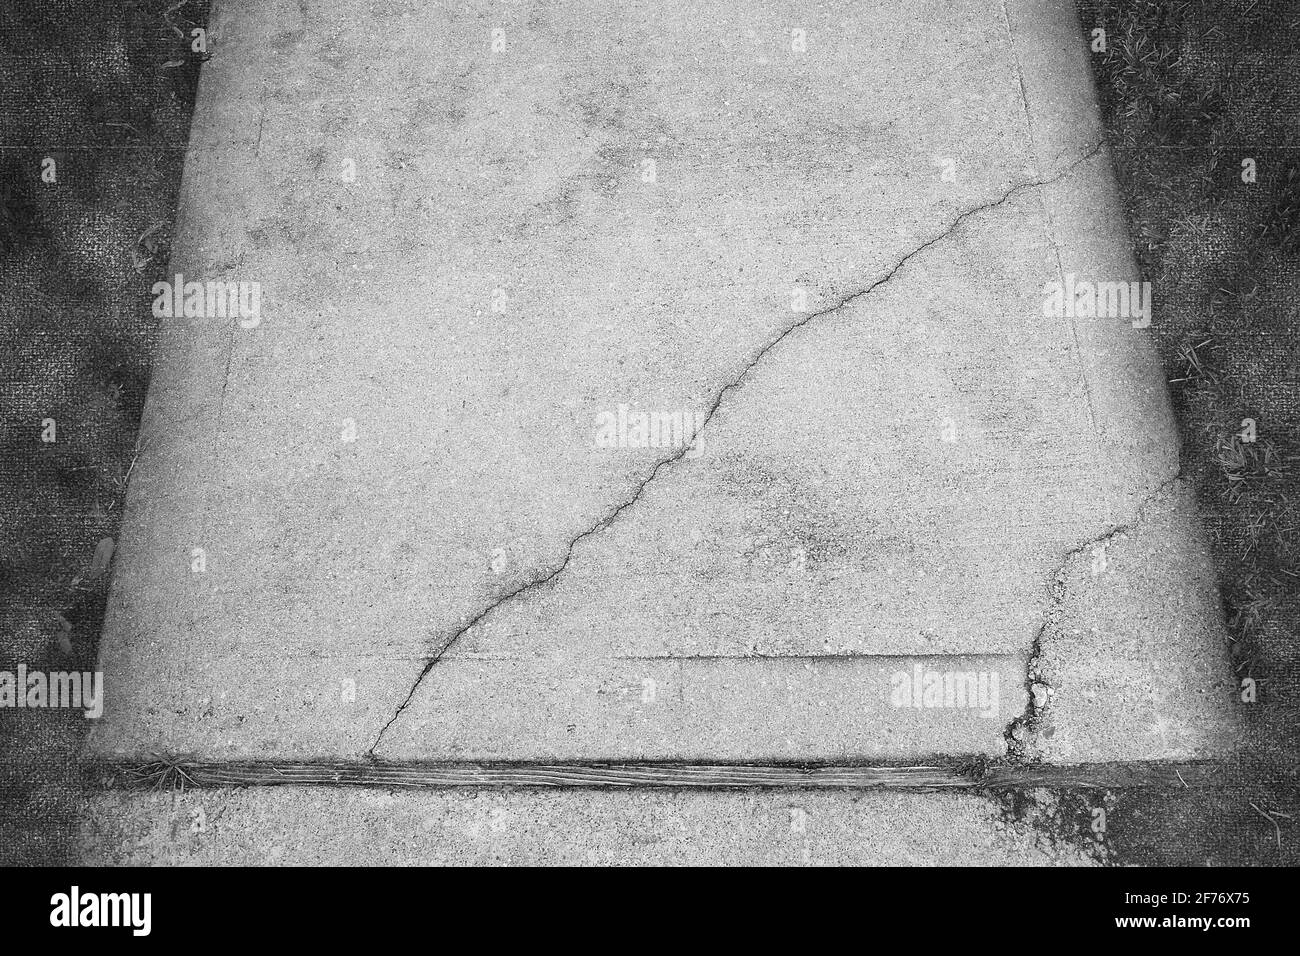 Photographie abstraite en noir et blanc d'un trottoir en béton fissuré et brisé où les fissures sont mises en évidence et sont le principal intérêt. Banque D'Images